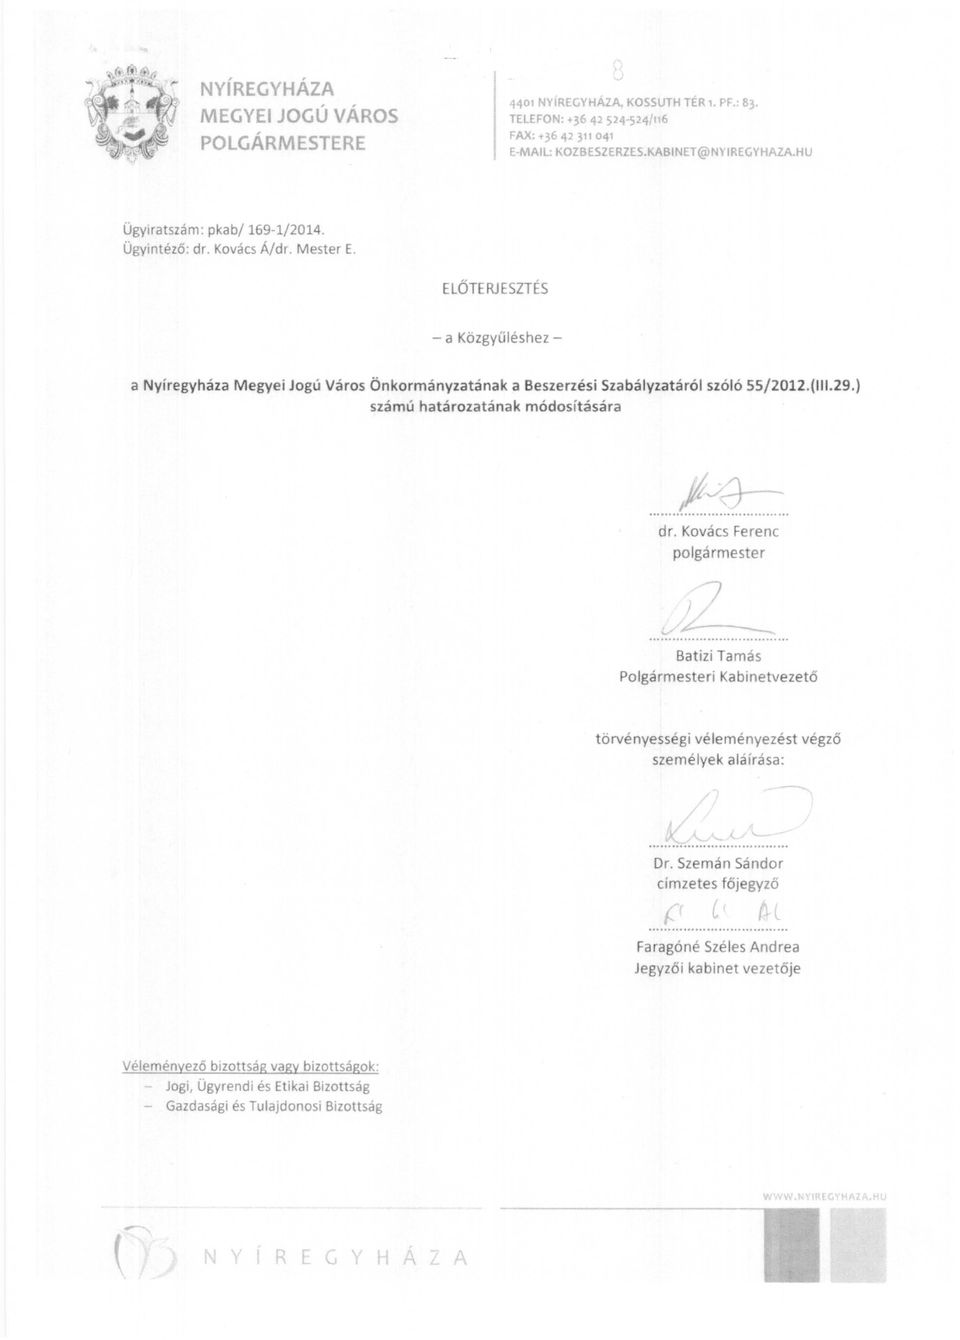 ELŐTE RJ ESZTÉS - a Kőzgyűléshez a Nyíregyháza Megyei Jogú Város Önkormányzatának a Beszerzési Szabályzatáról szóló 55/2012.(111.29.) számú határozatának módosítására fjd-...l......... dr.